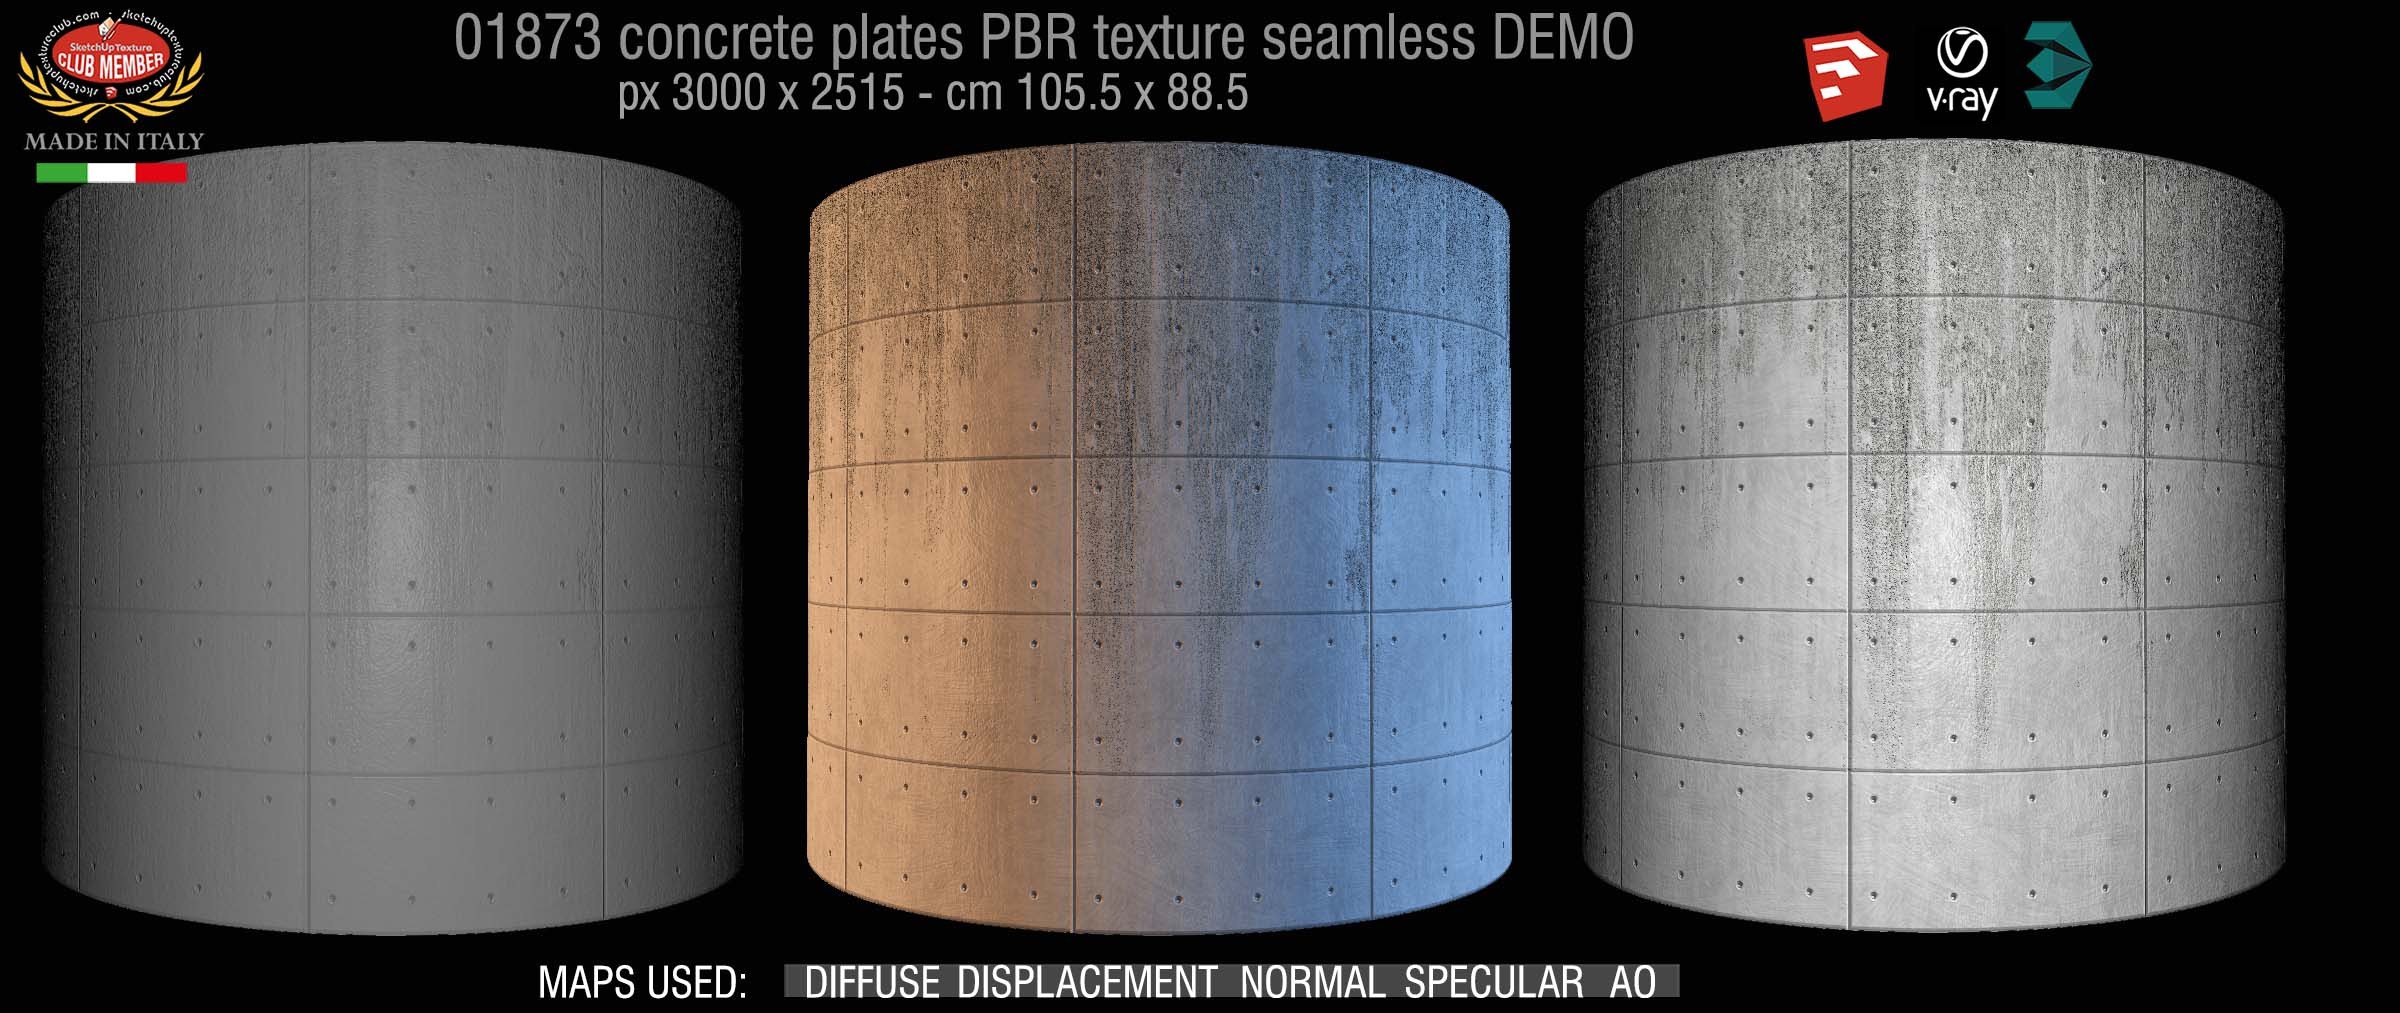 01873 tadao ando concrete plates PBR texture seamless DEMO